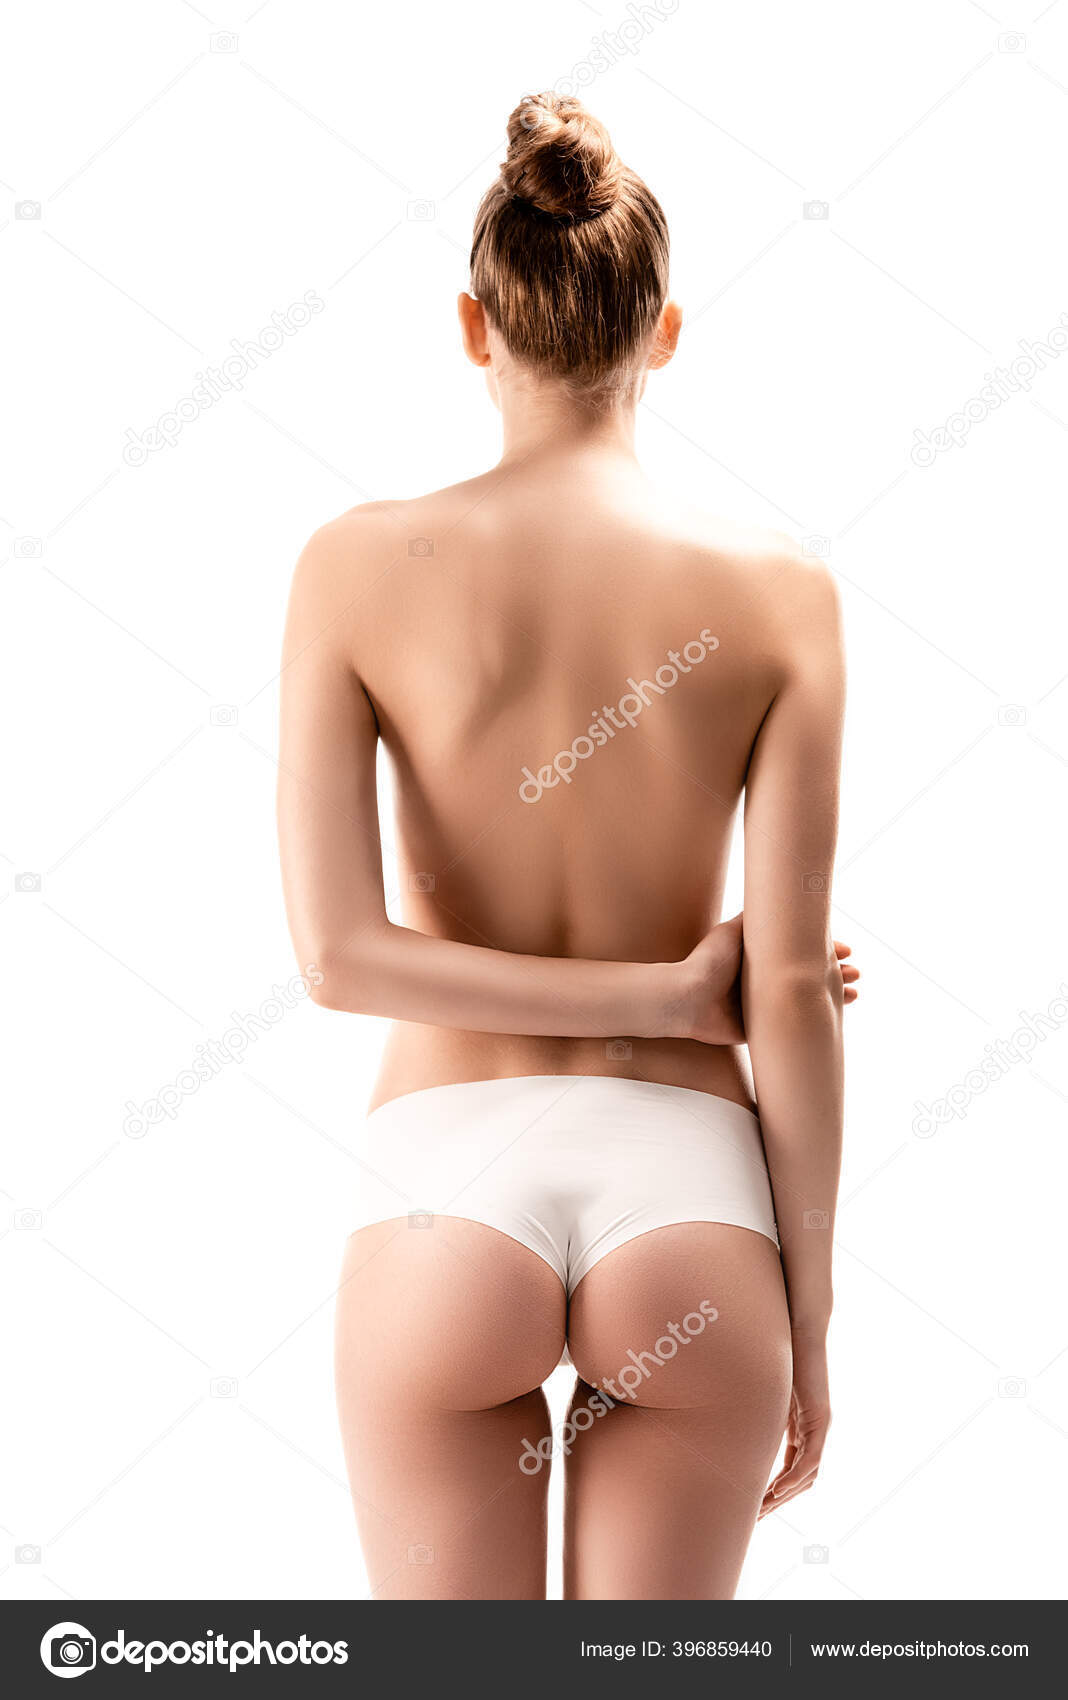 https://st4.depositphotos.com/13193658/39685/i/1600/depositphotos_396859440-stock-photo-back-view-woman-panties-standing.jpg